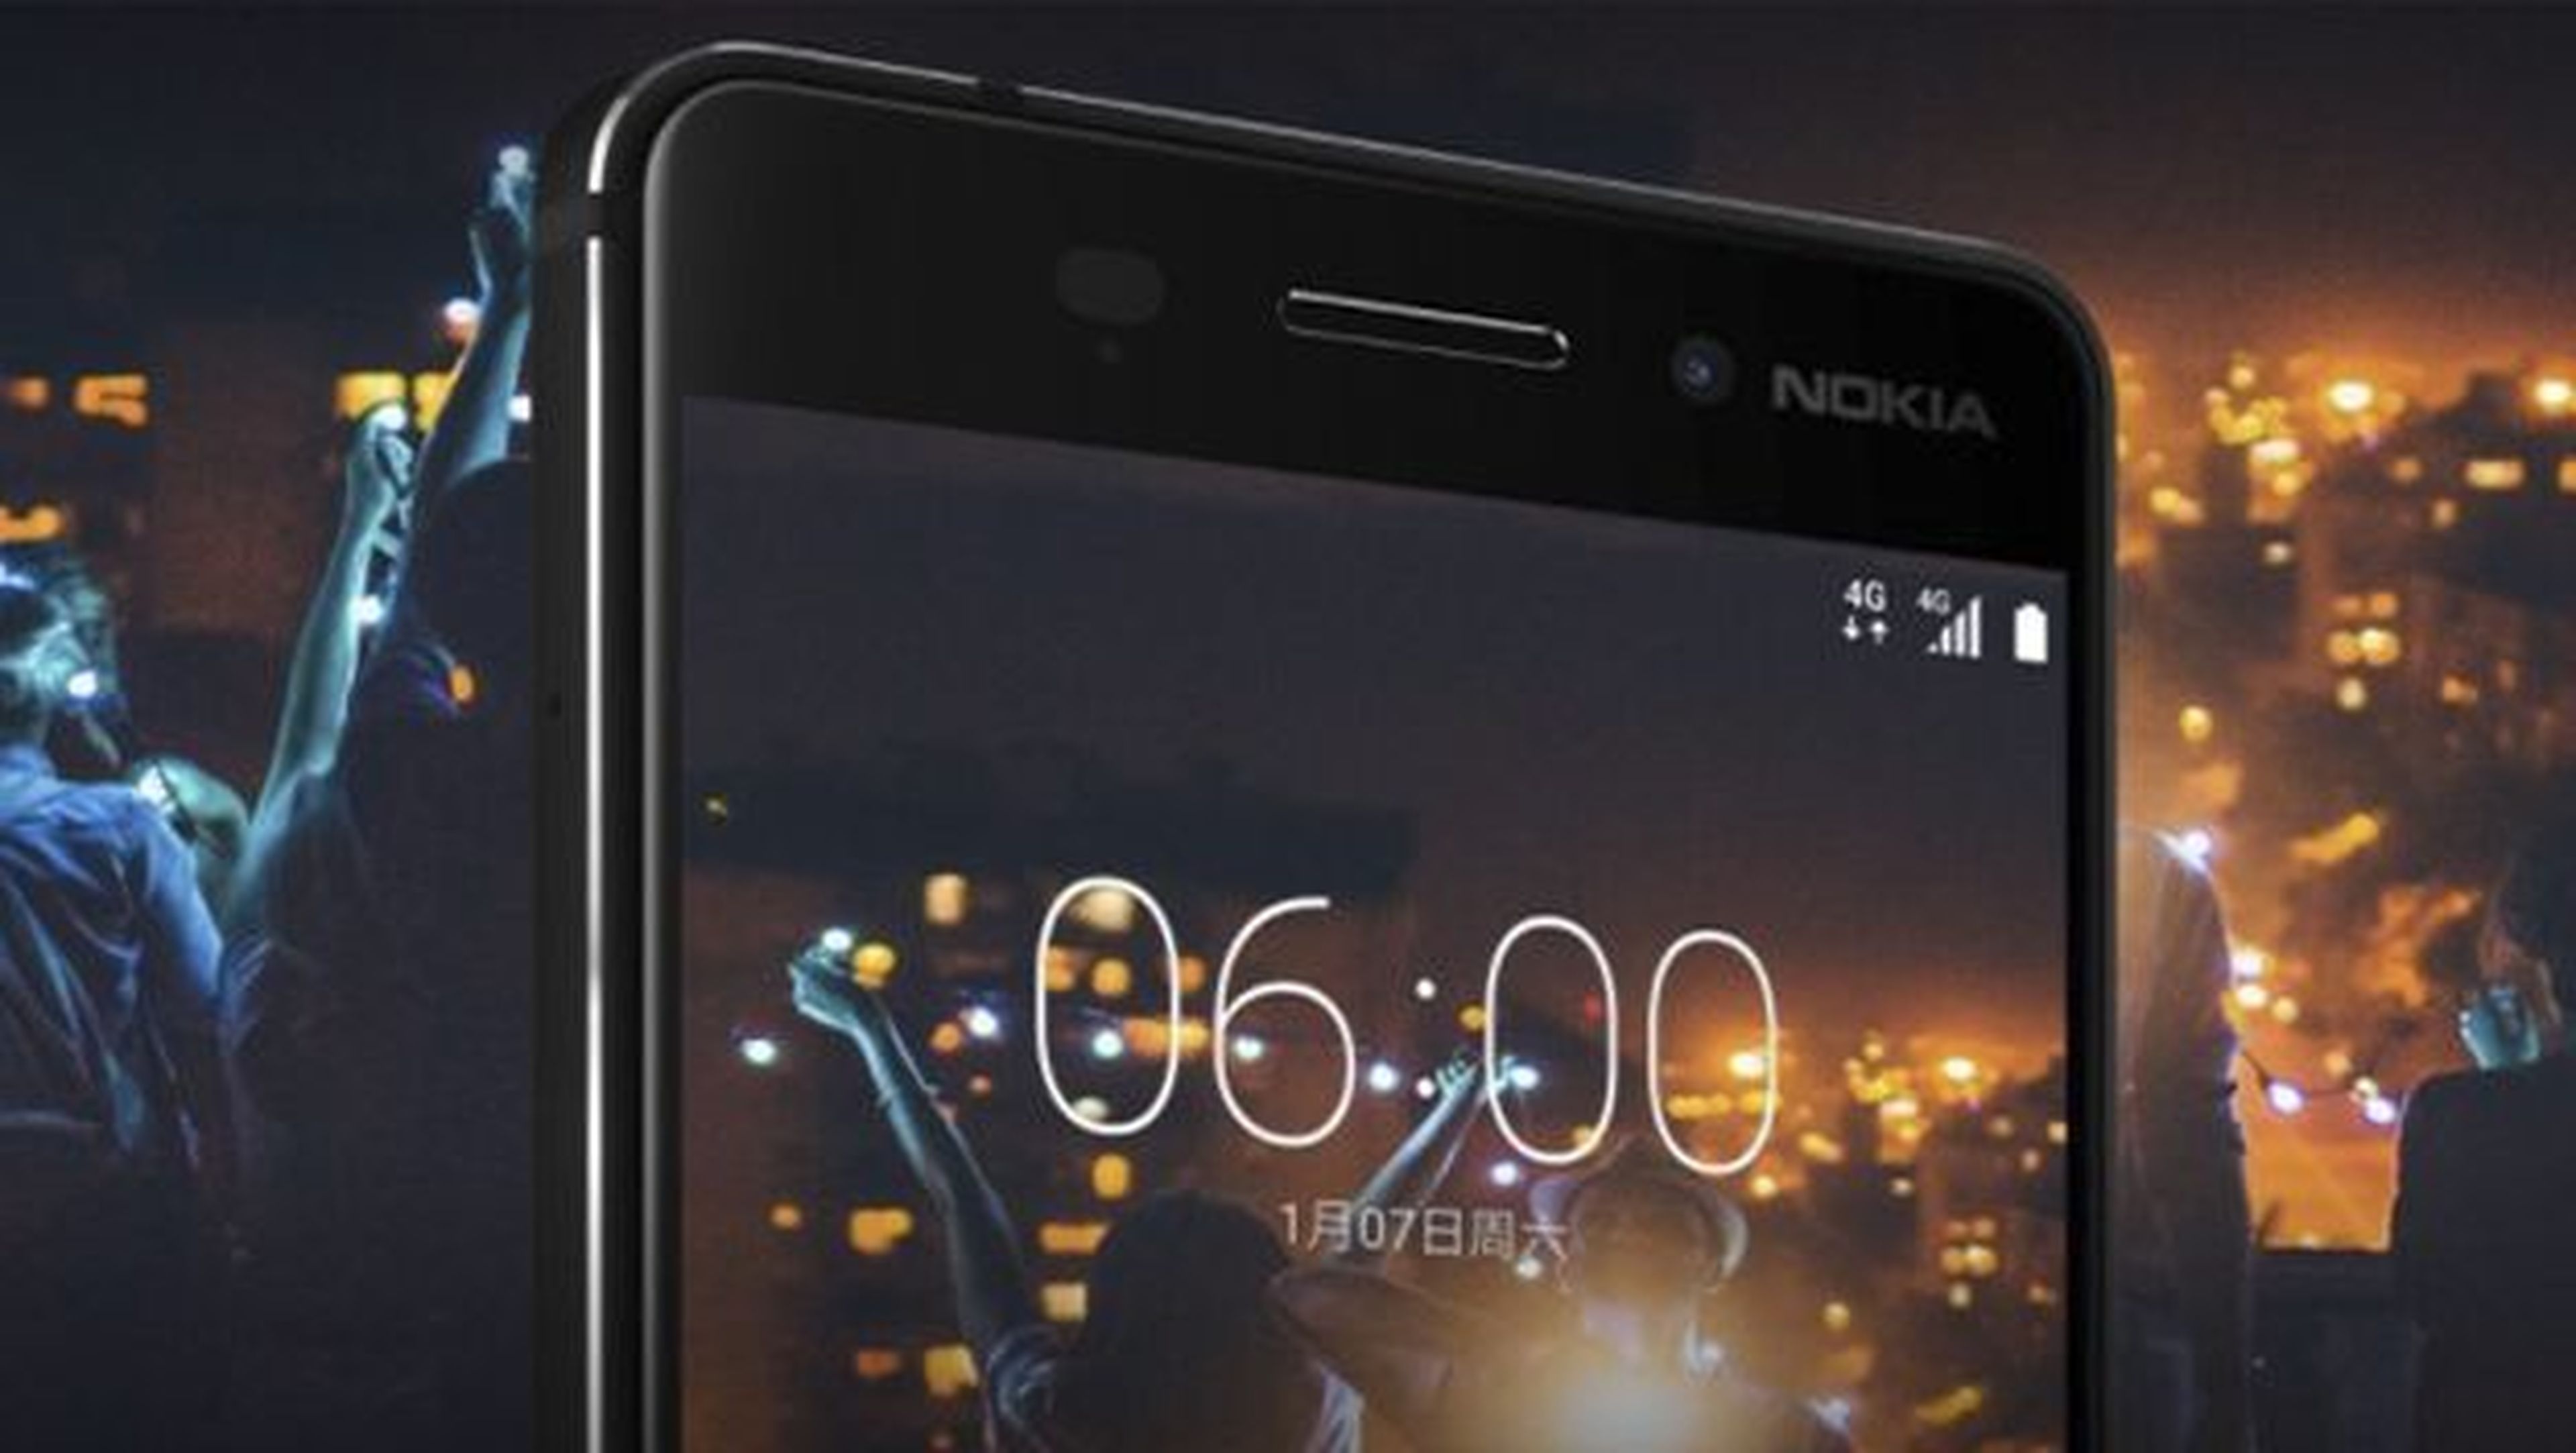 Nokia 6, oficialmente disponible en España y Europa: todos los detalles